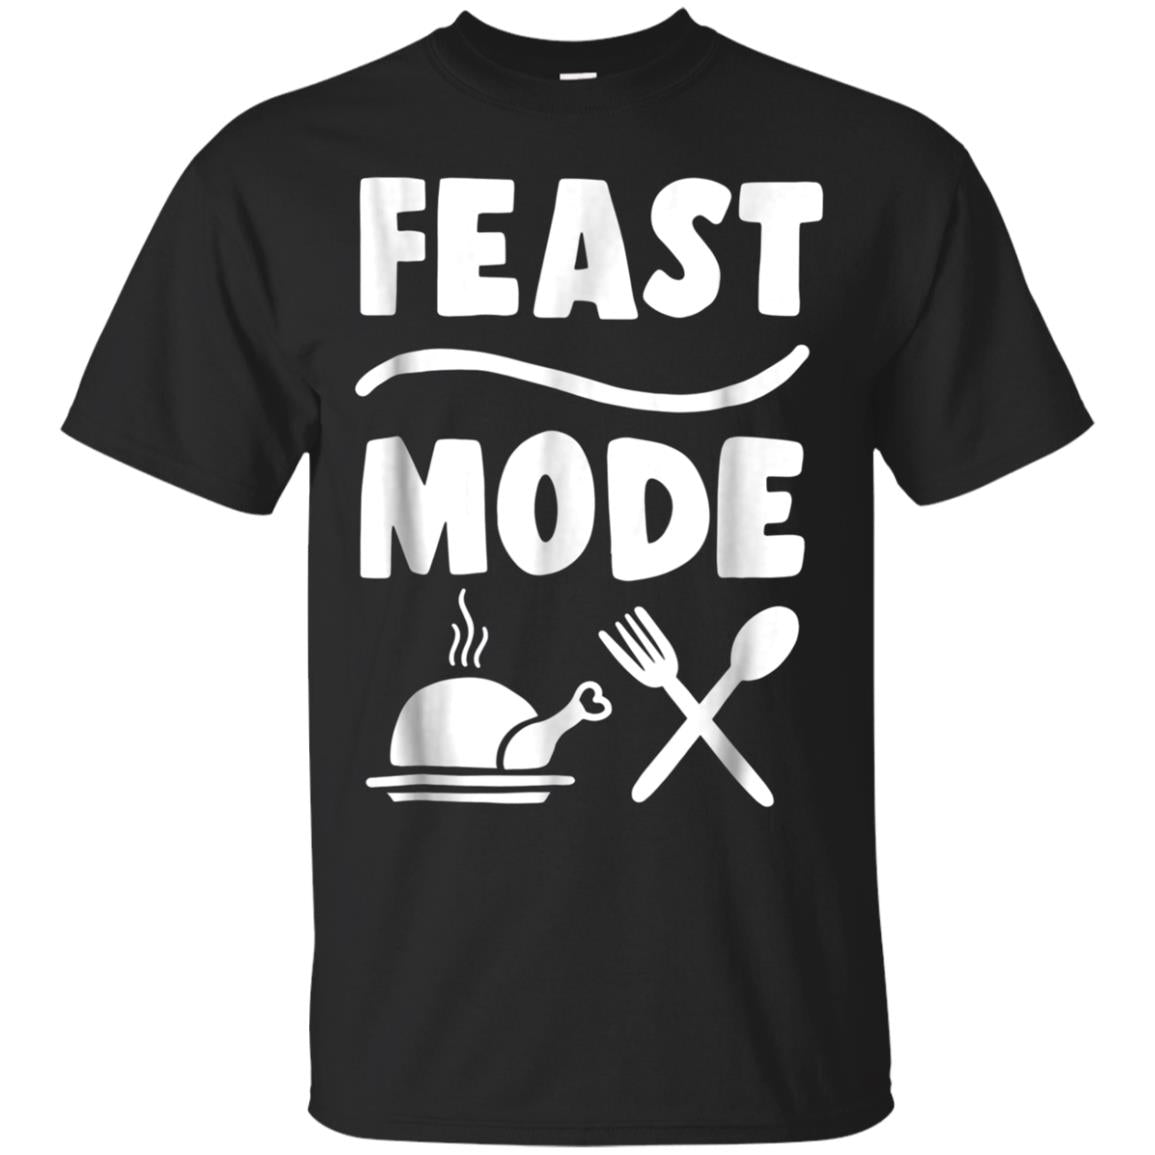 St Mode Funny Thanksgiving Dinner Shirt For Adult 